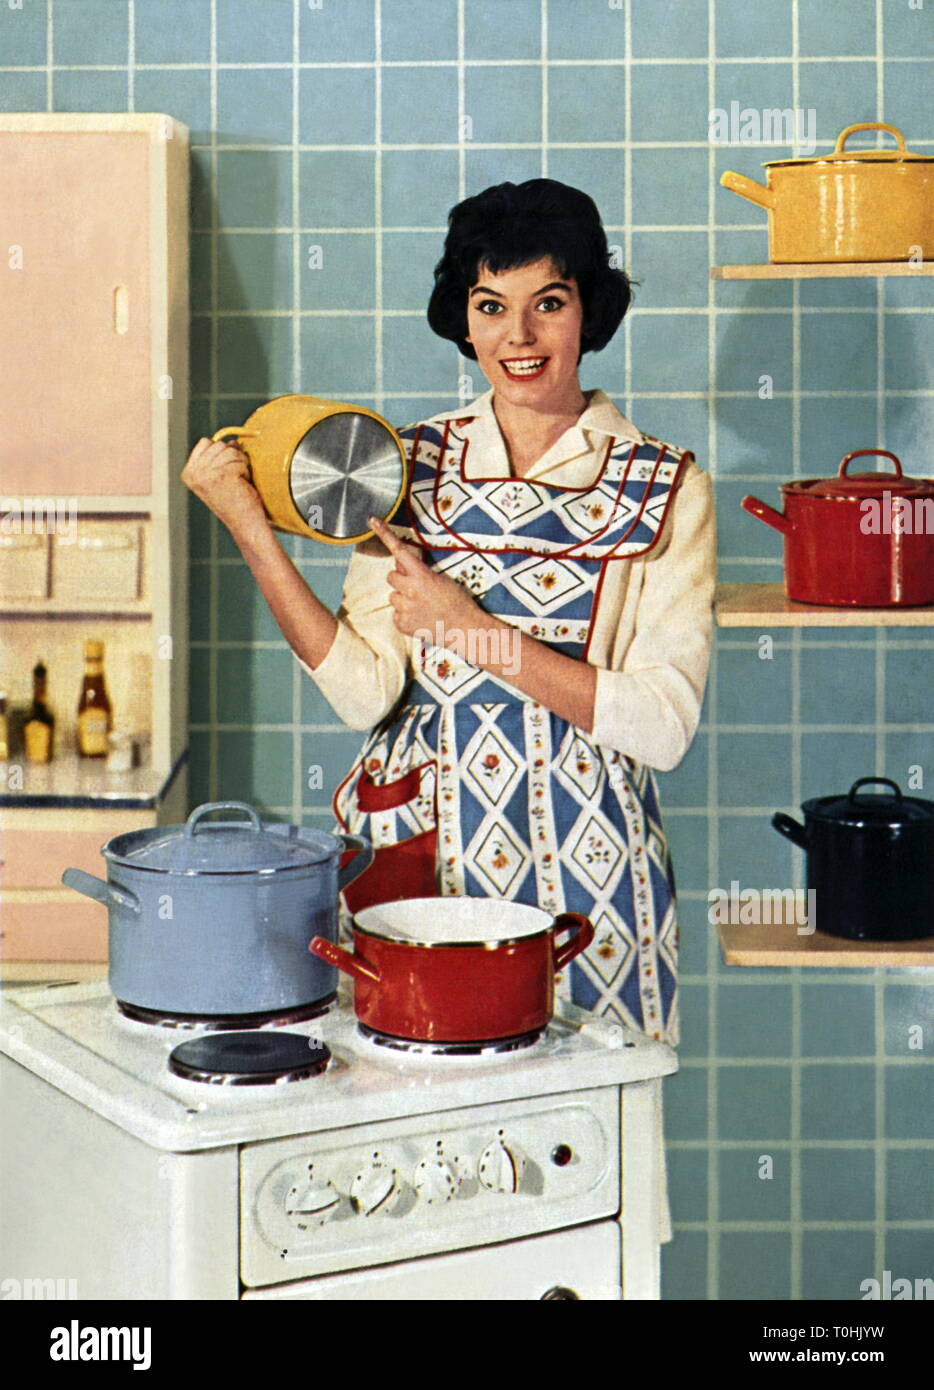 Hogar, cocina, ama de casa detrás de la estufa, la publicidad de los utensilios de cocina de acero de alto grado, Alemania, circa 1958, Additional-Rights-Clearance-Info-Not-Available Foto de stock